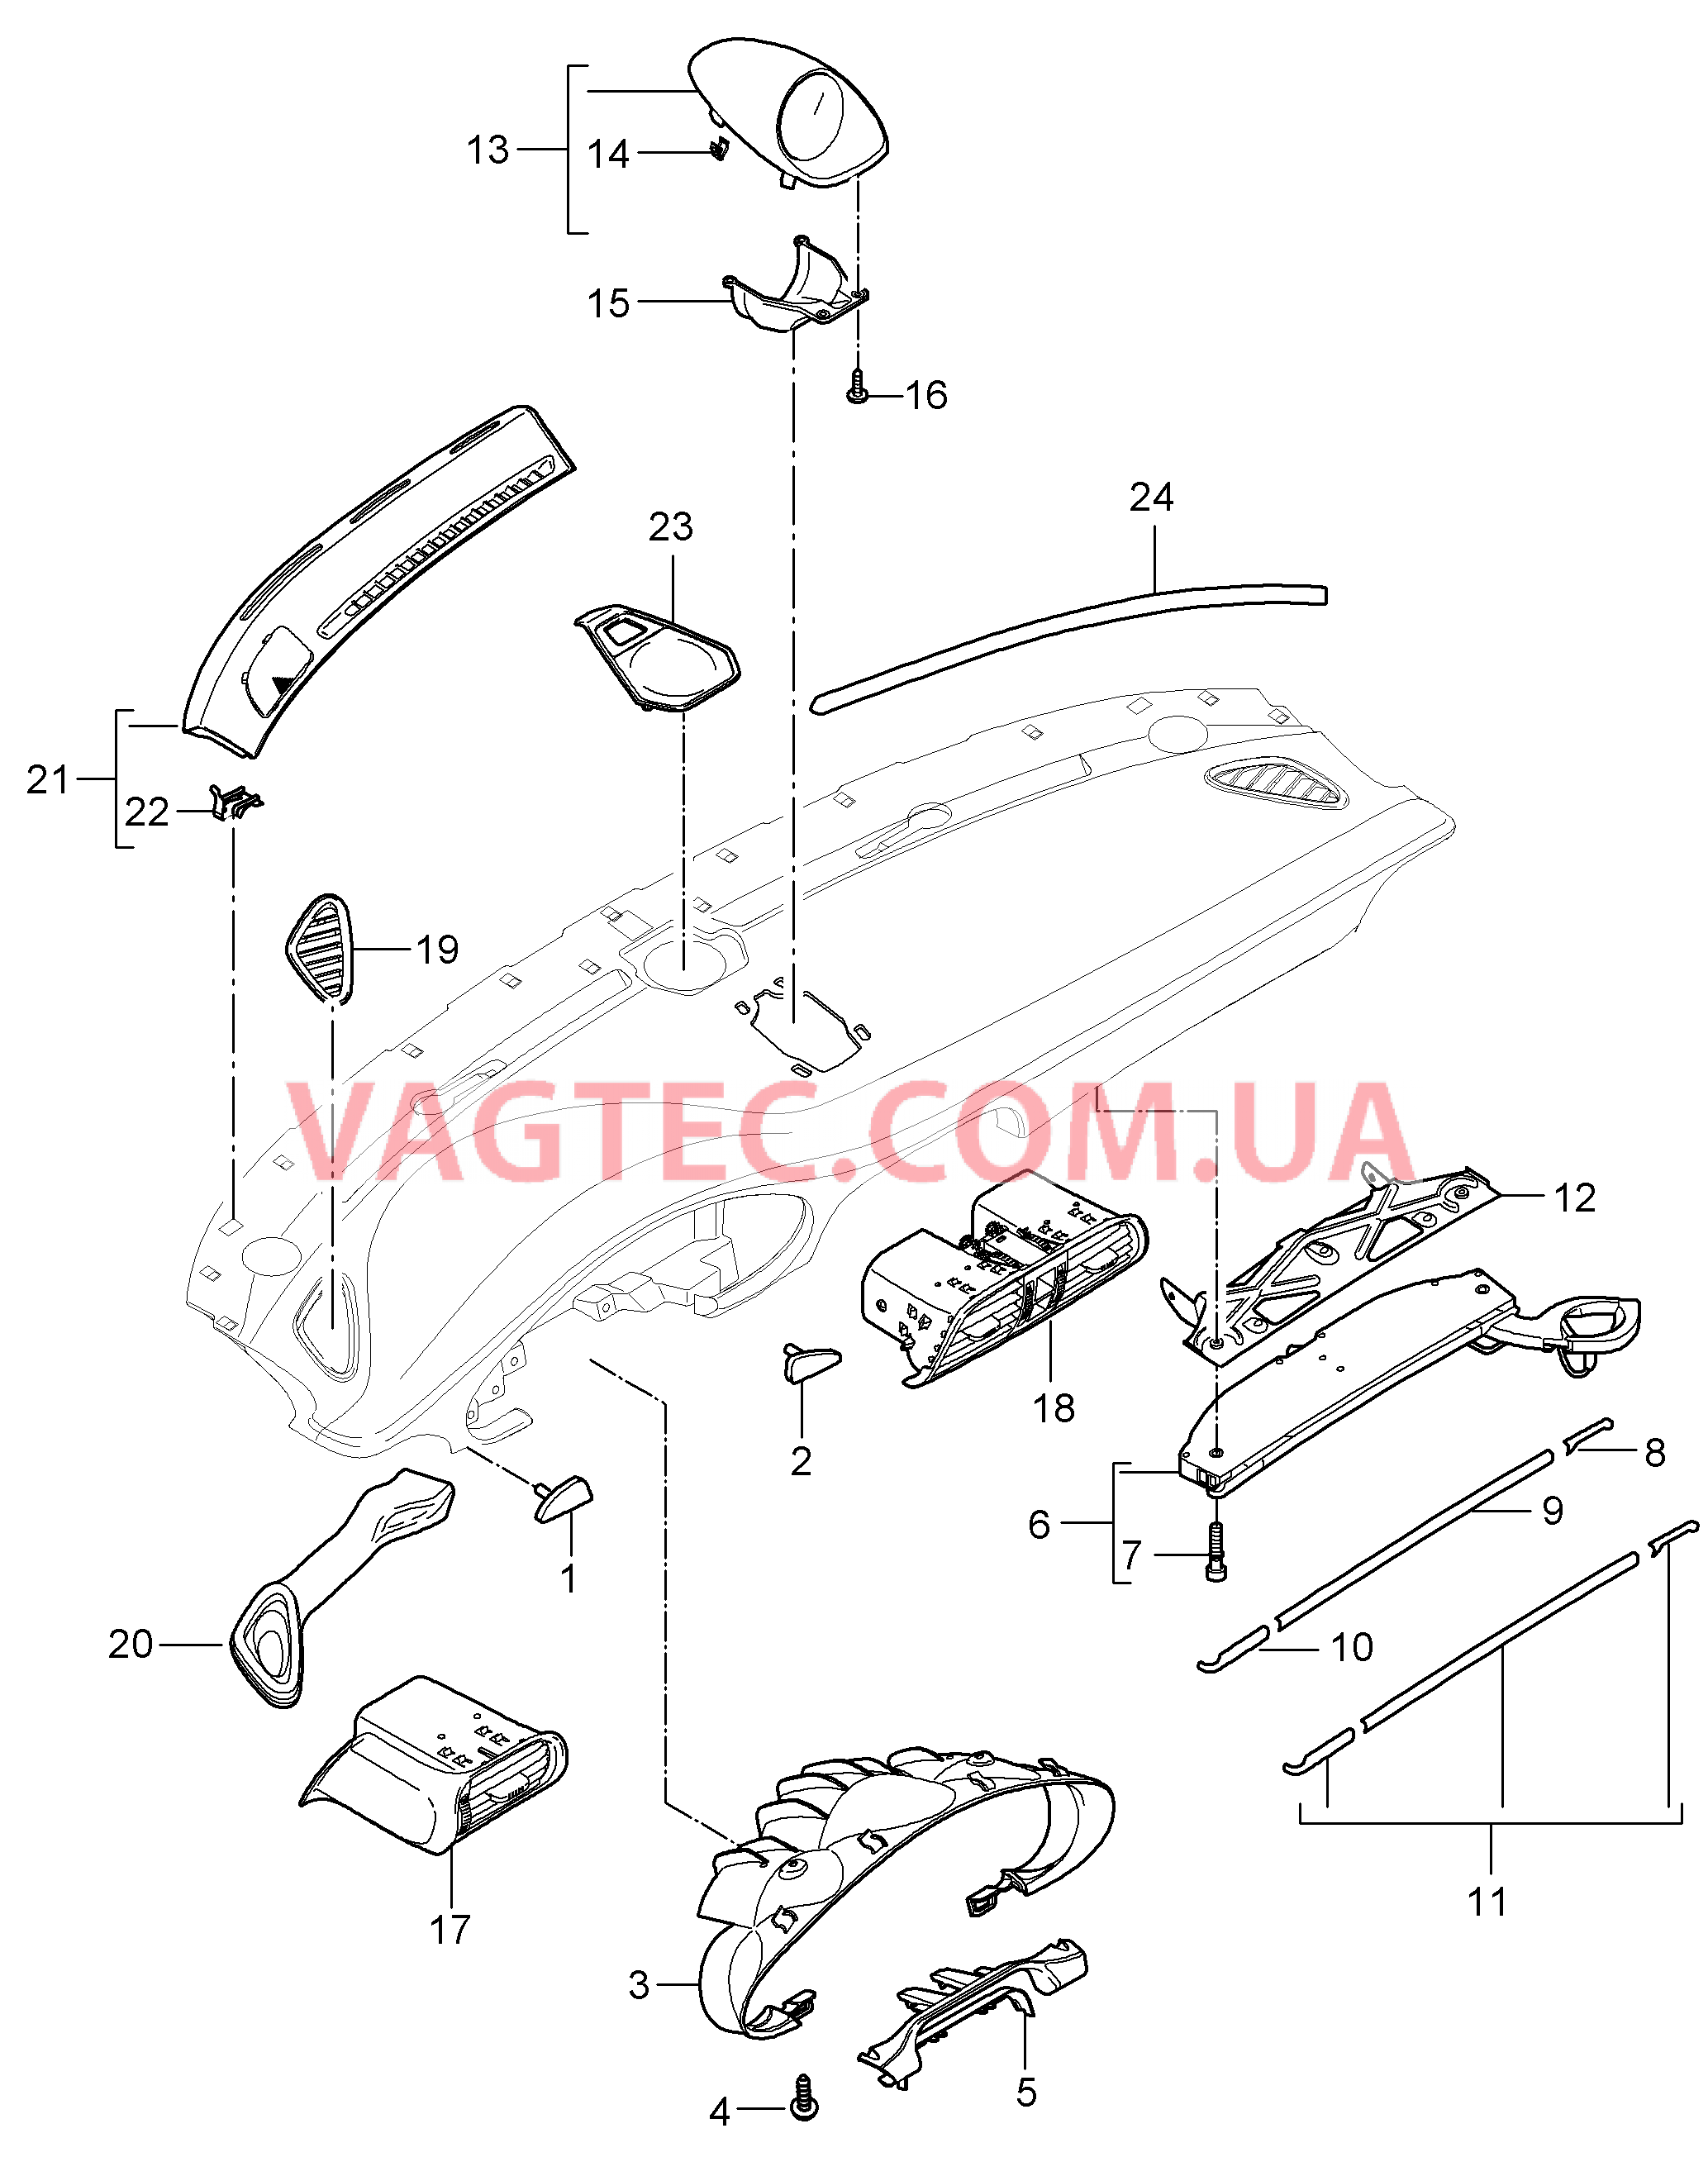 809-001 Детали, Облицовка передней панели, Верхняя часть для PORSCHE 911.Carrera 2005-2008